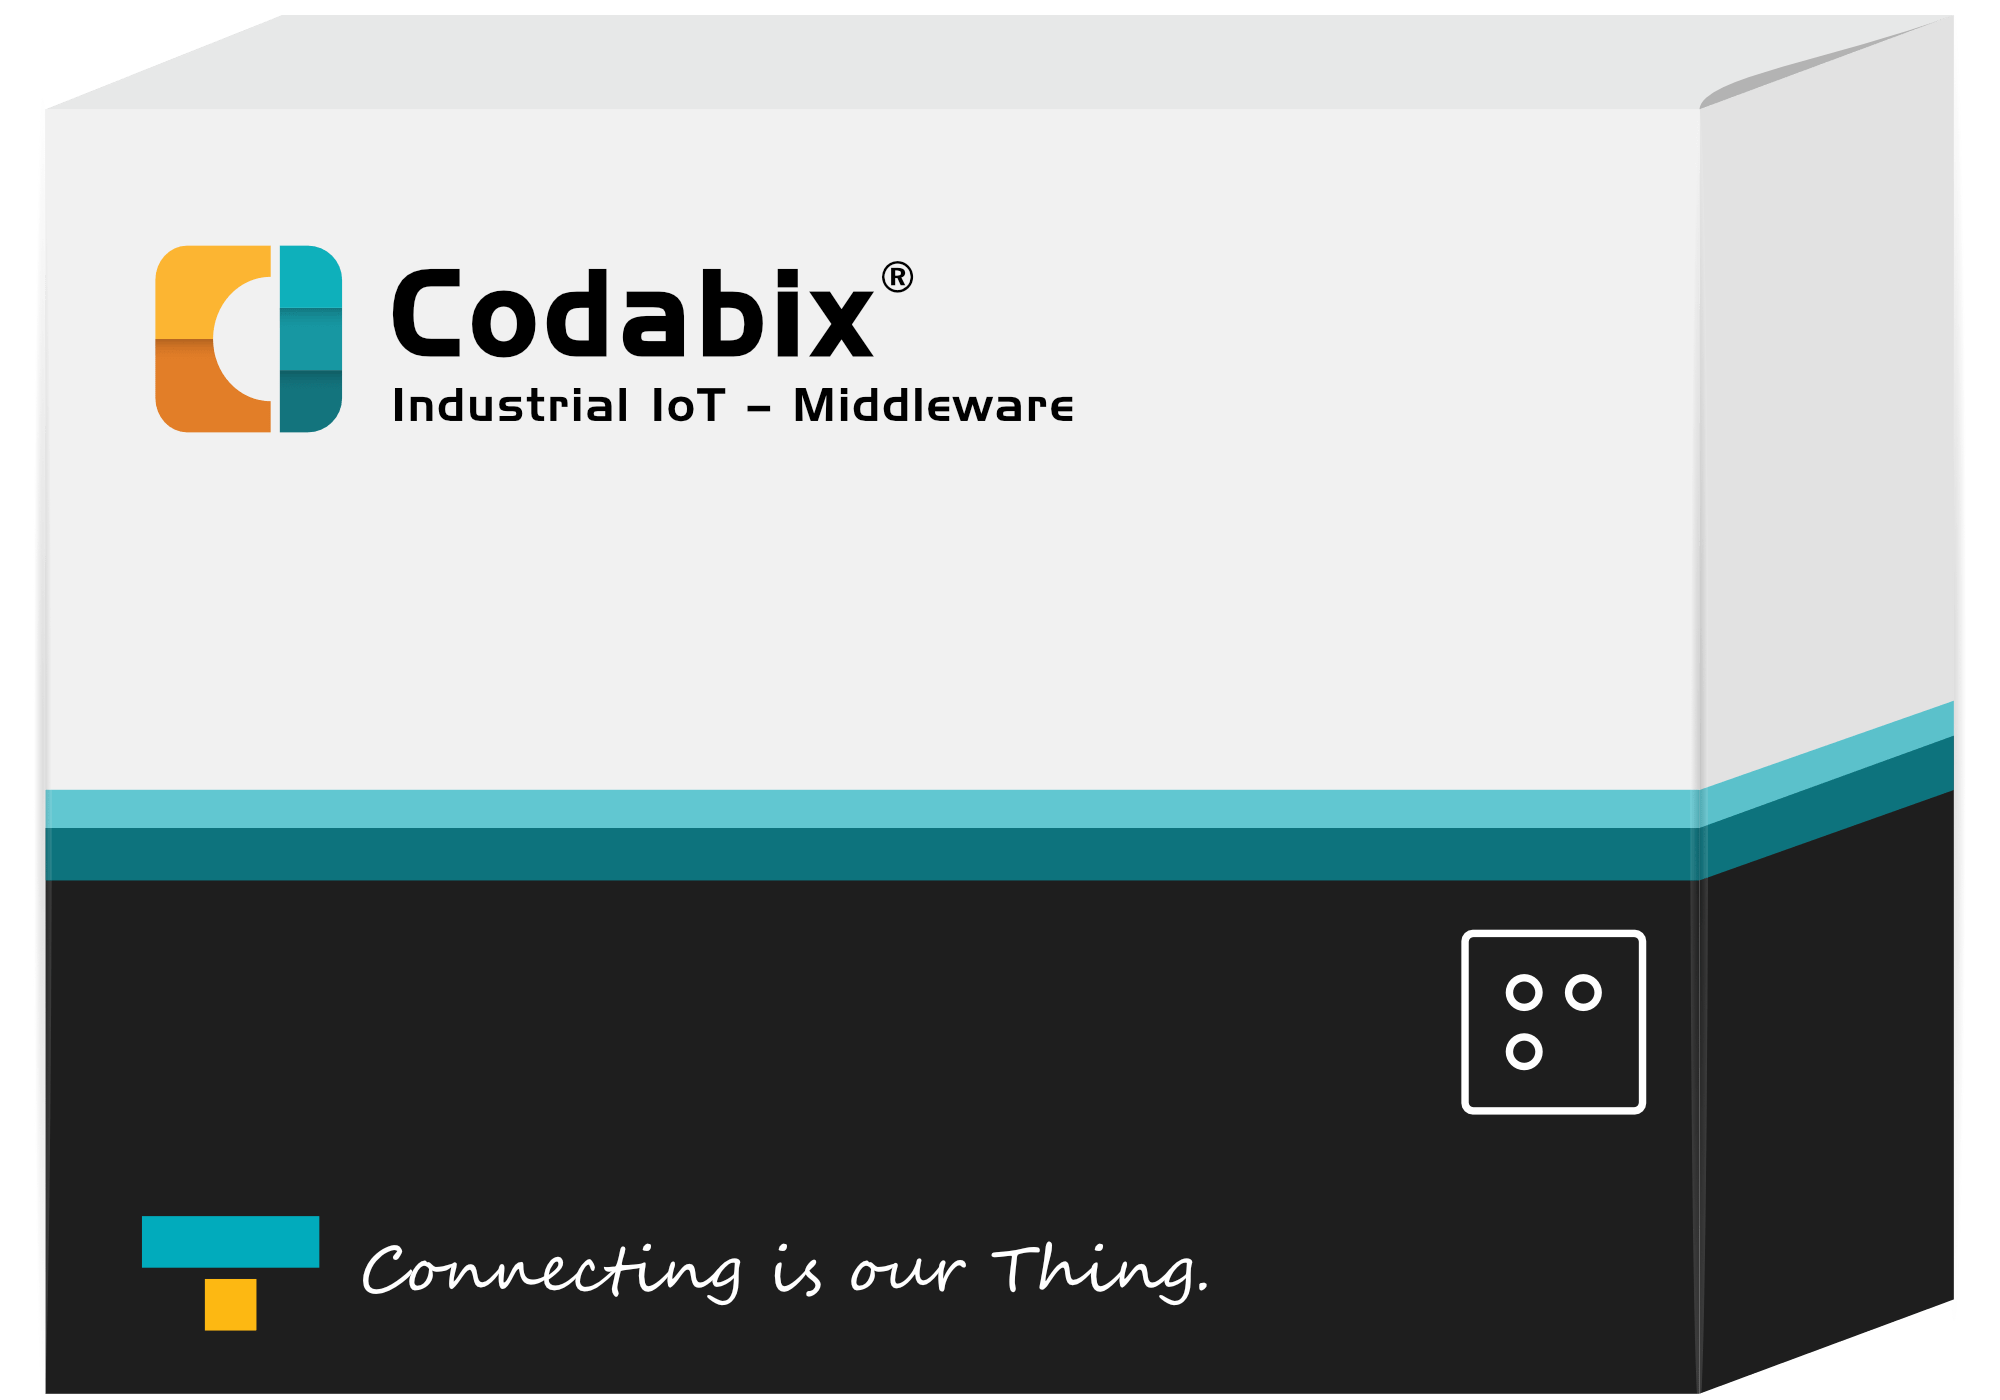 Codabix Industrial IoT